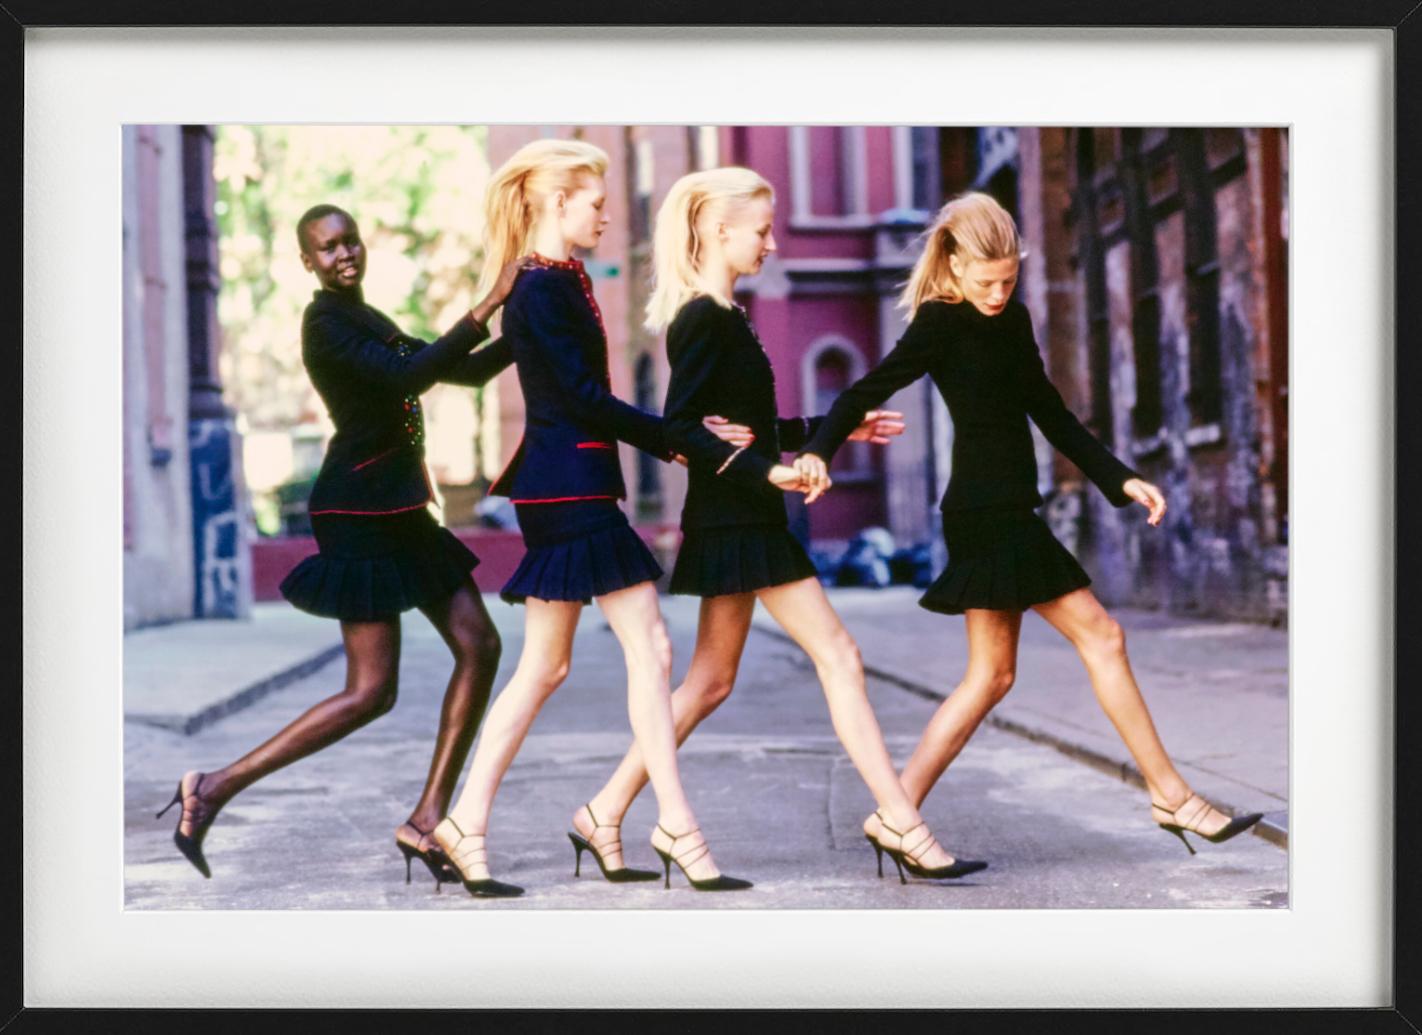 Alek Wek für Vogue – vier Models in schwarzen Powersuits, Kunstfotografie, 1997 – Photograph von Arthur Elgort